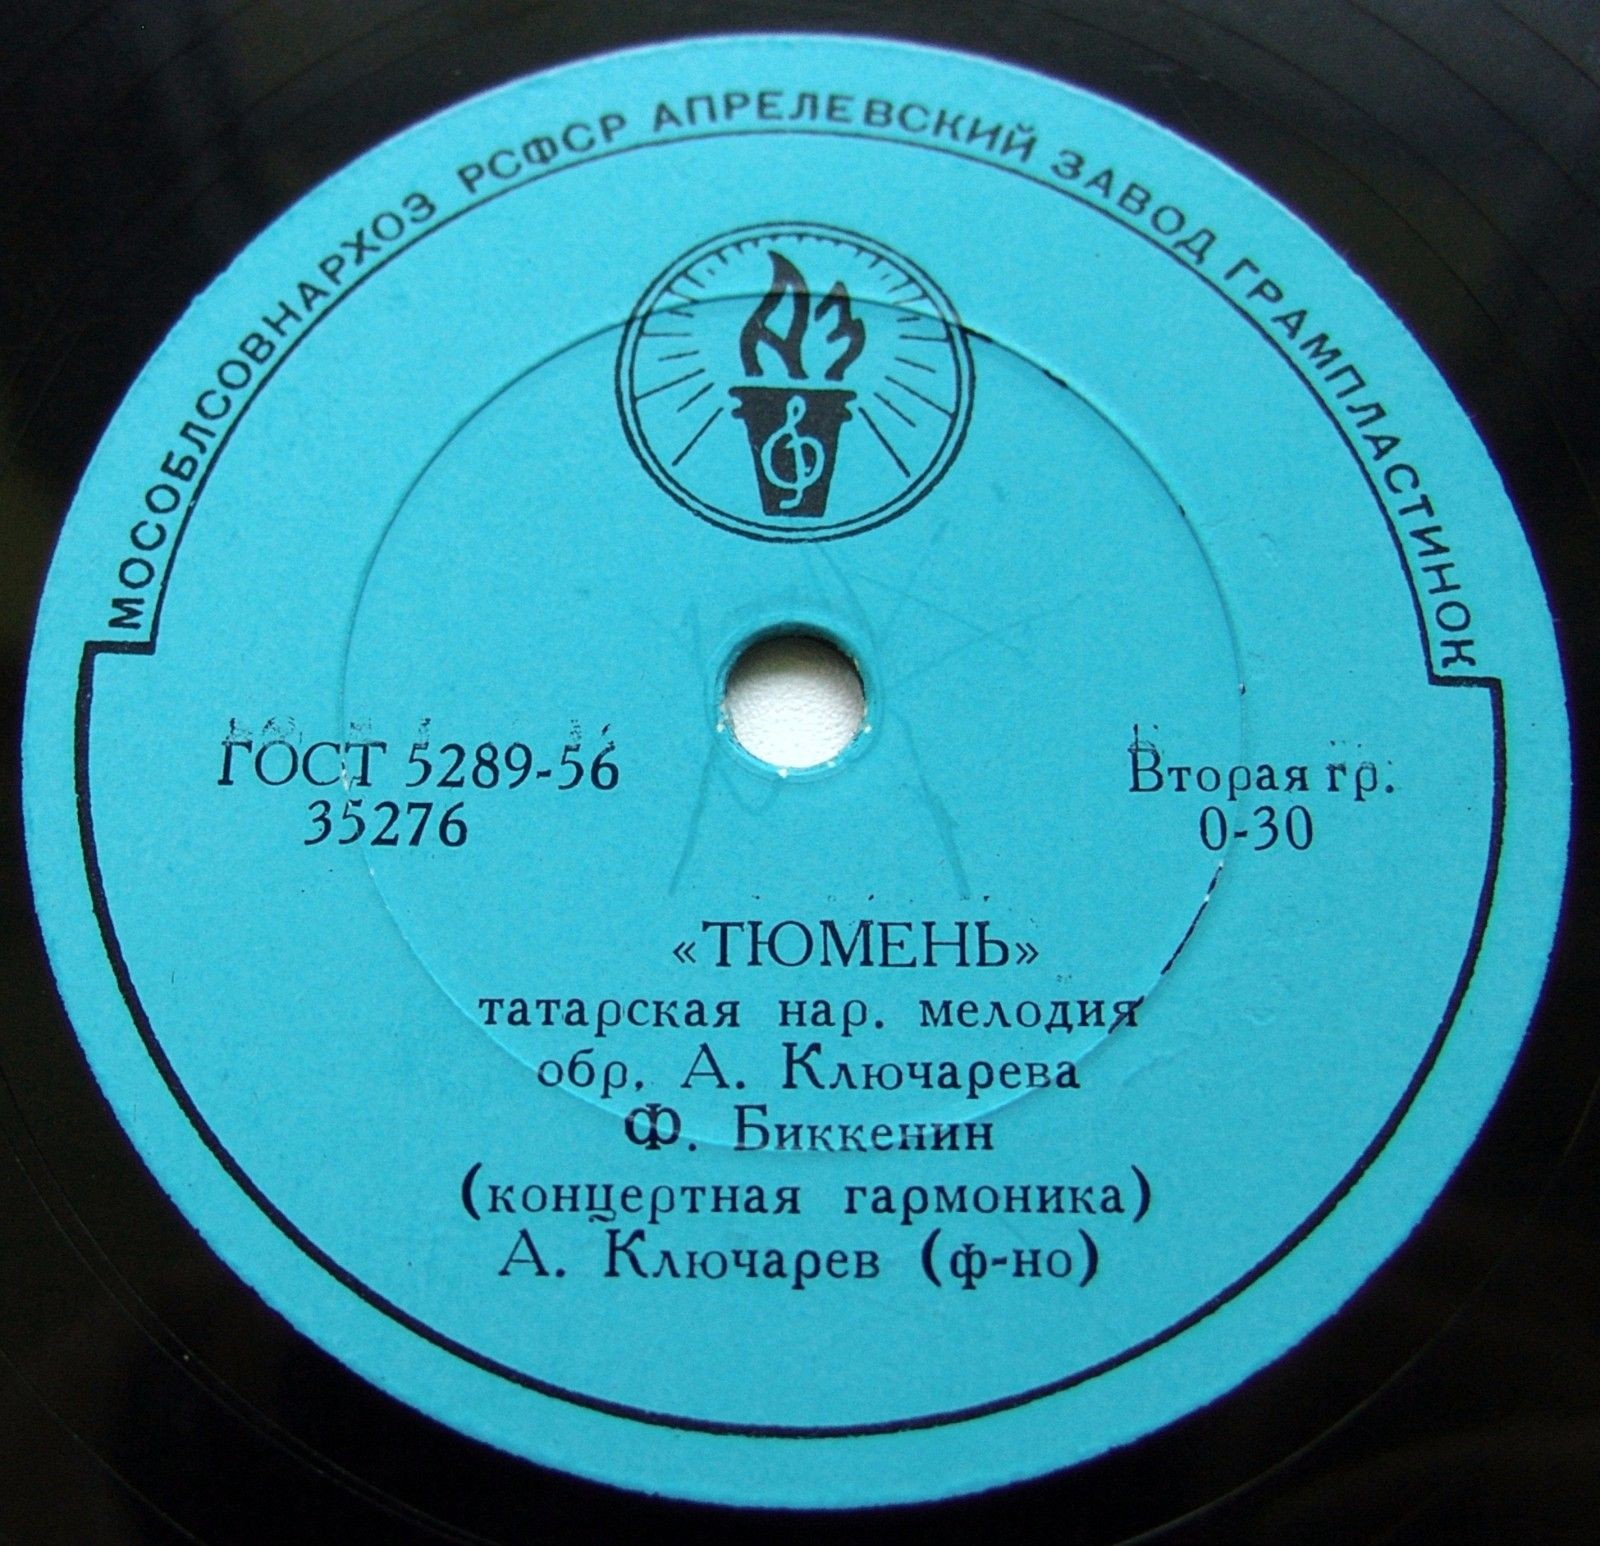 Ф. Биккенин (концертная гармоника) — Татарские народные мелодии